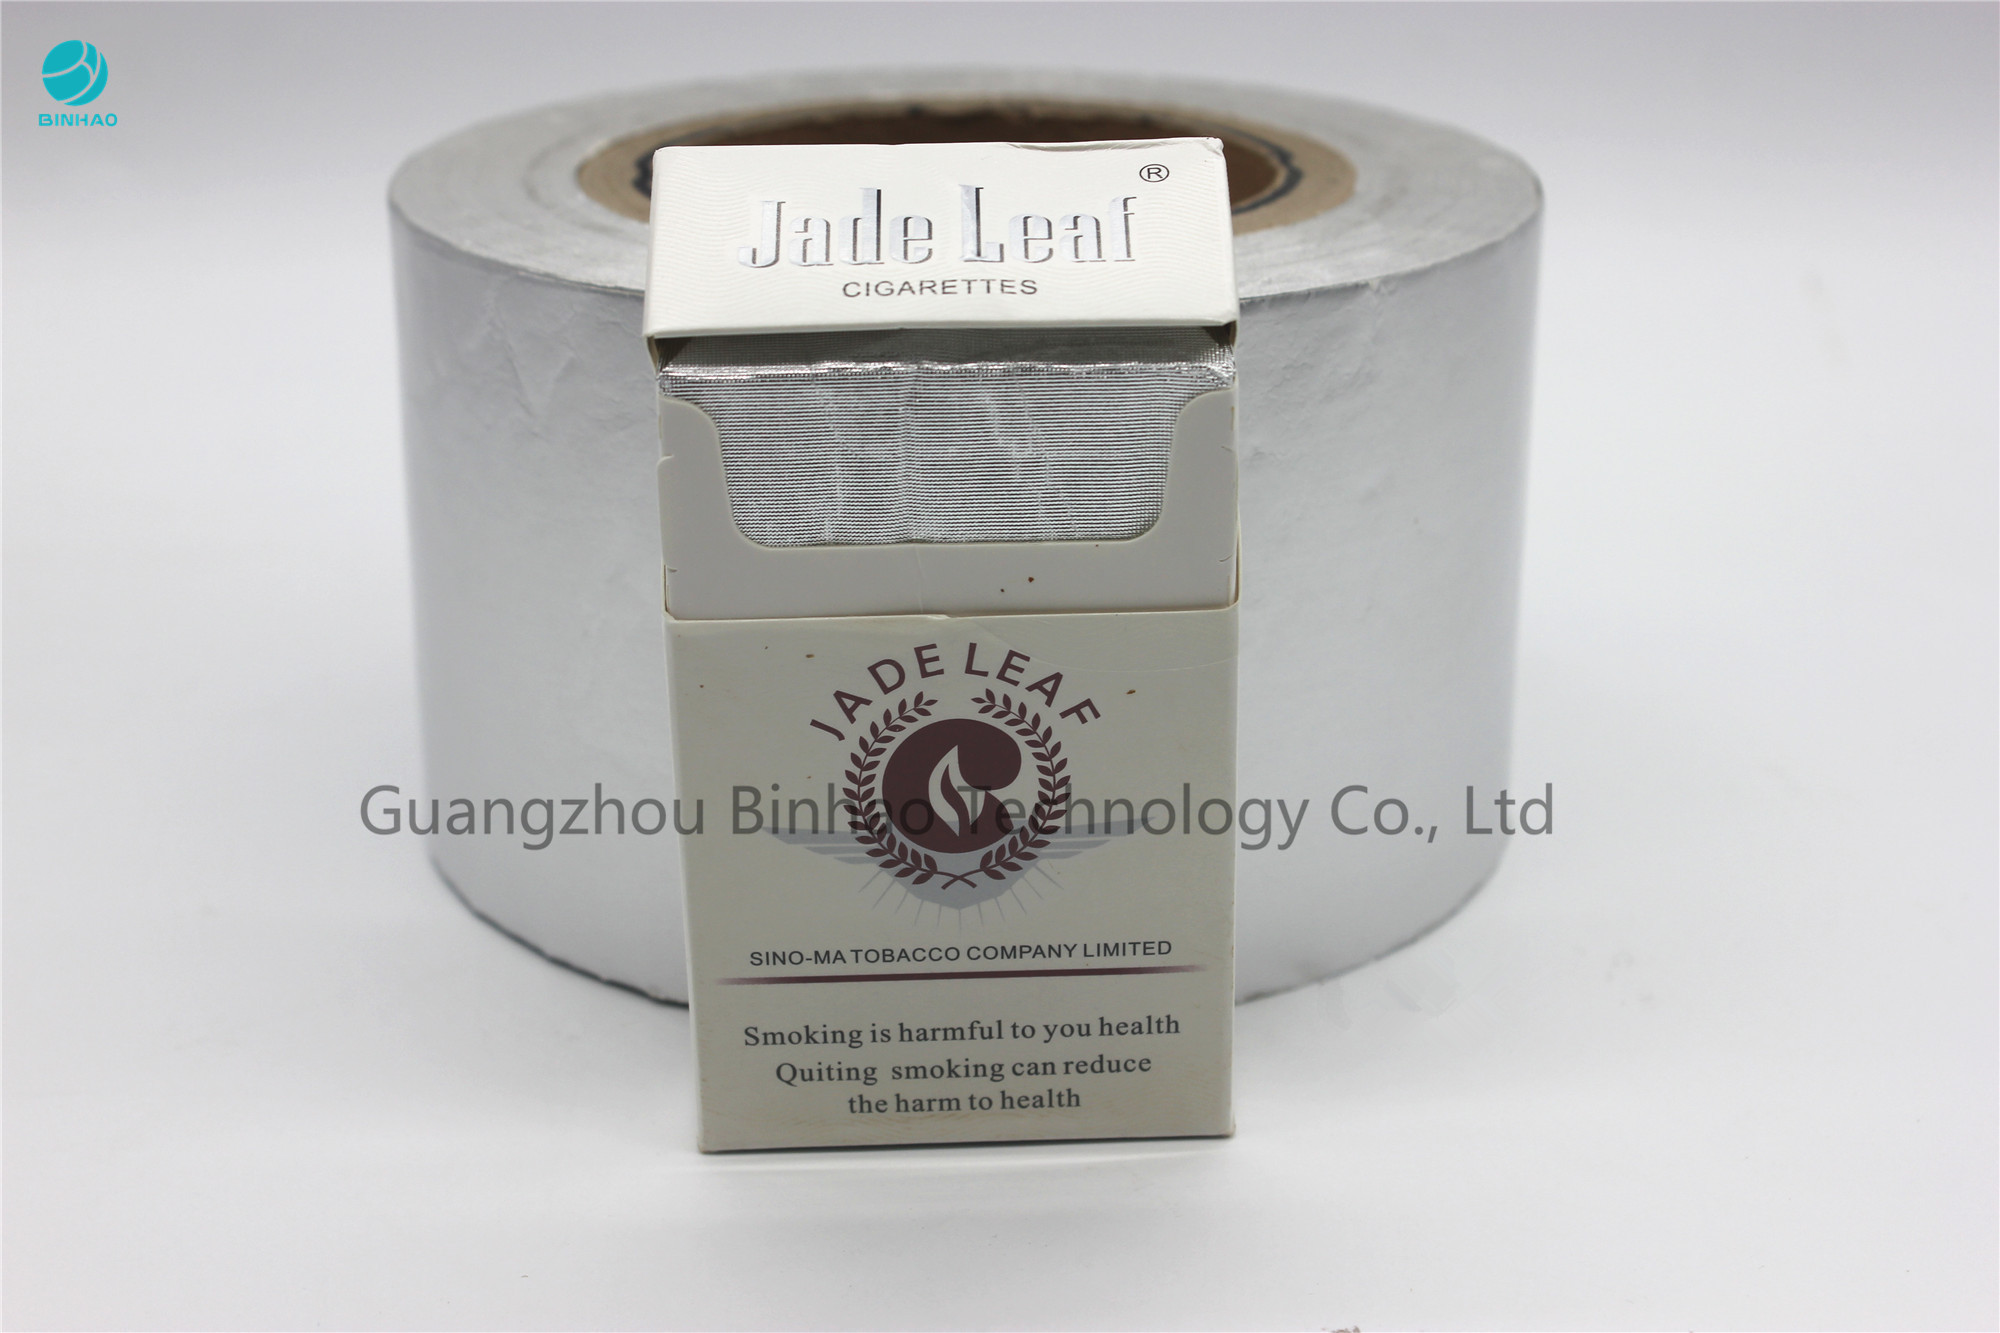 Papier brut blanc de Composited de papier d'aluminium de 7 microns pour l'emballage intérieur de boîte de cigarette